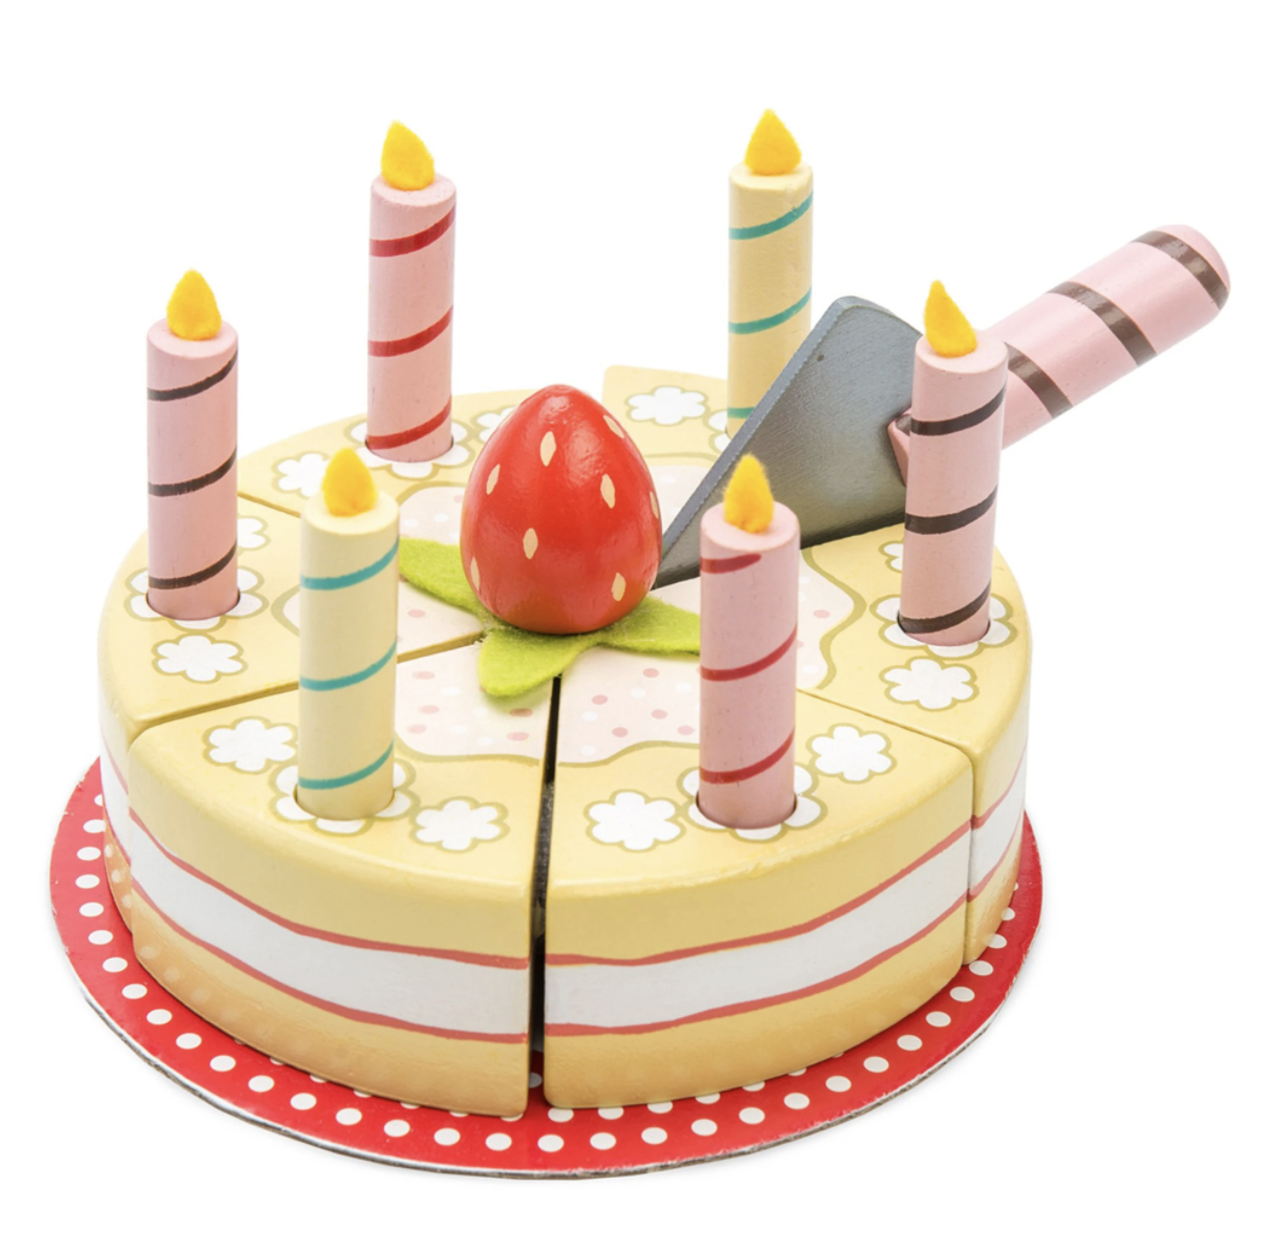 Le Toy Van - Vanilla party cake